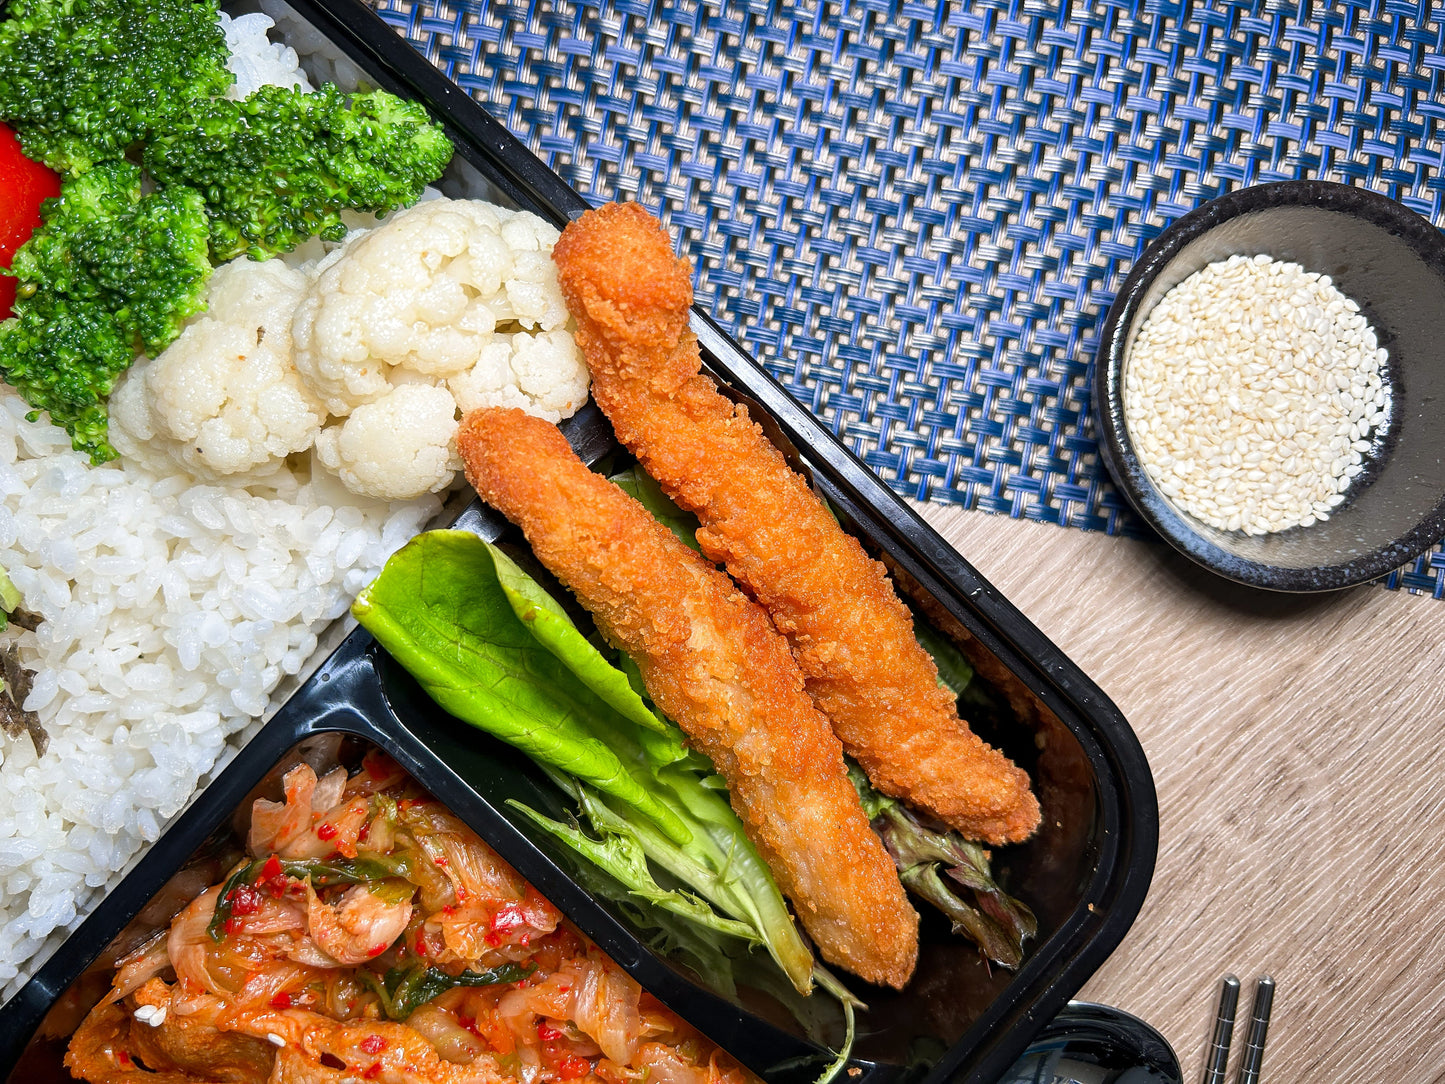 韓流泡菜豬腩肉珍珠飯配孜然雞條 | 便當飯盒到會